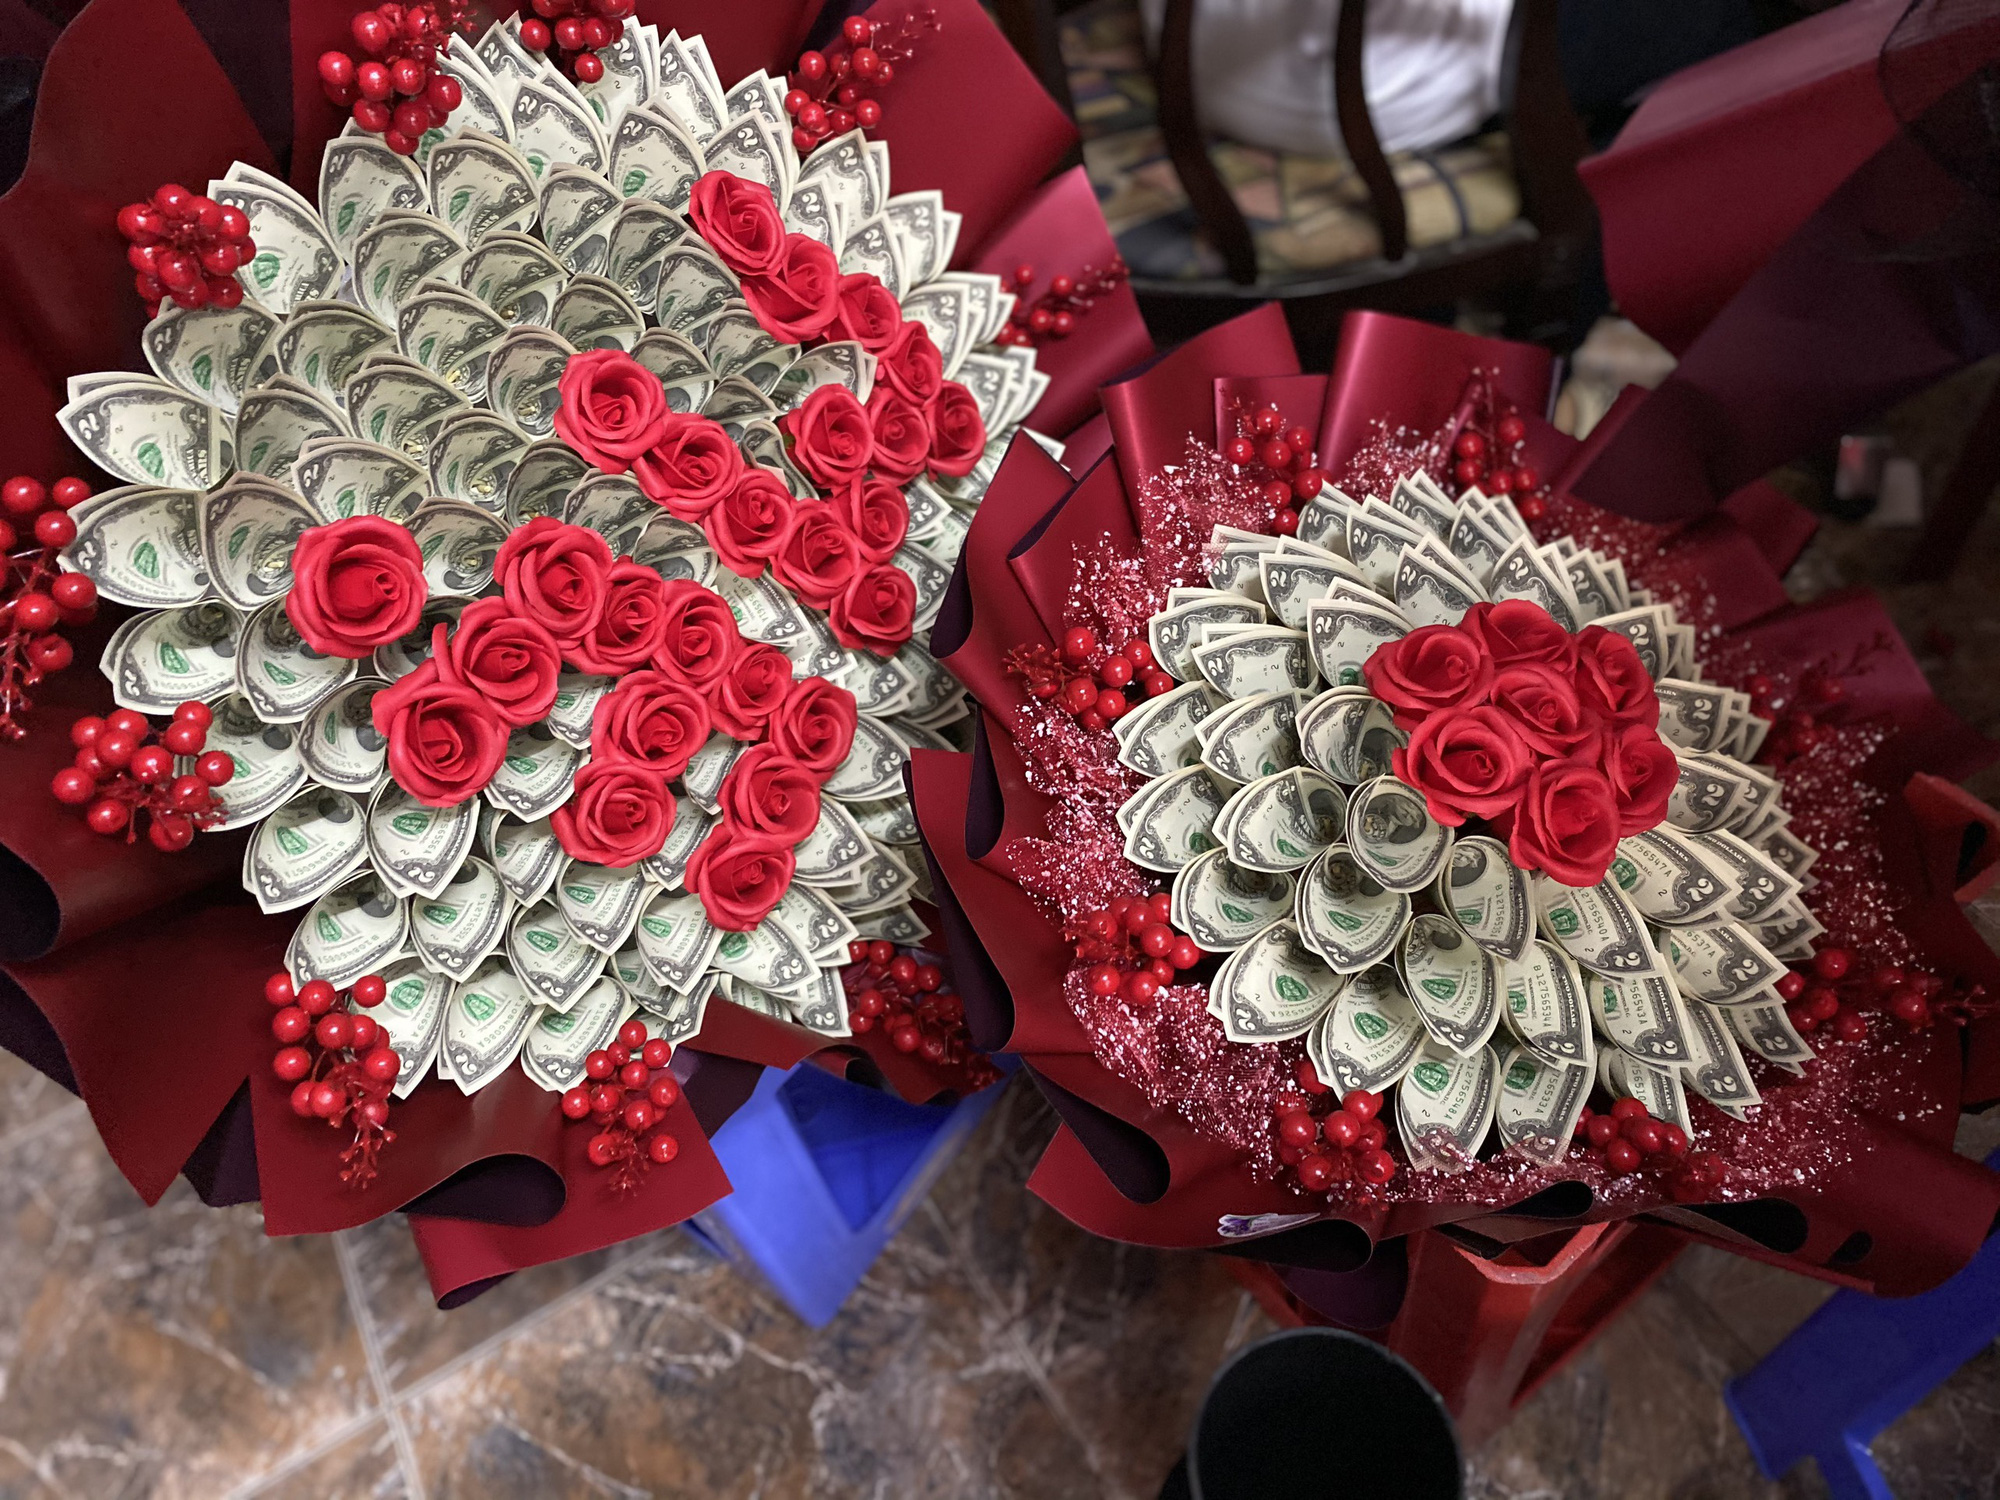 Sốc với bó hoa bằng tiền mặt trị giá 200 triệu đồng ngày 20/10 - Ảnh 4.